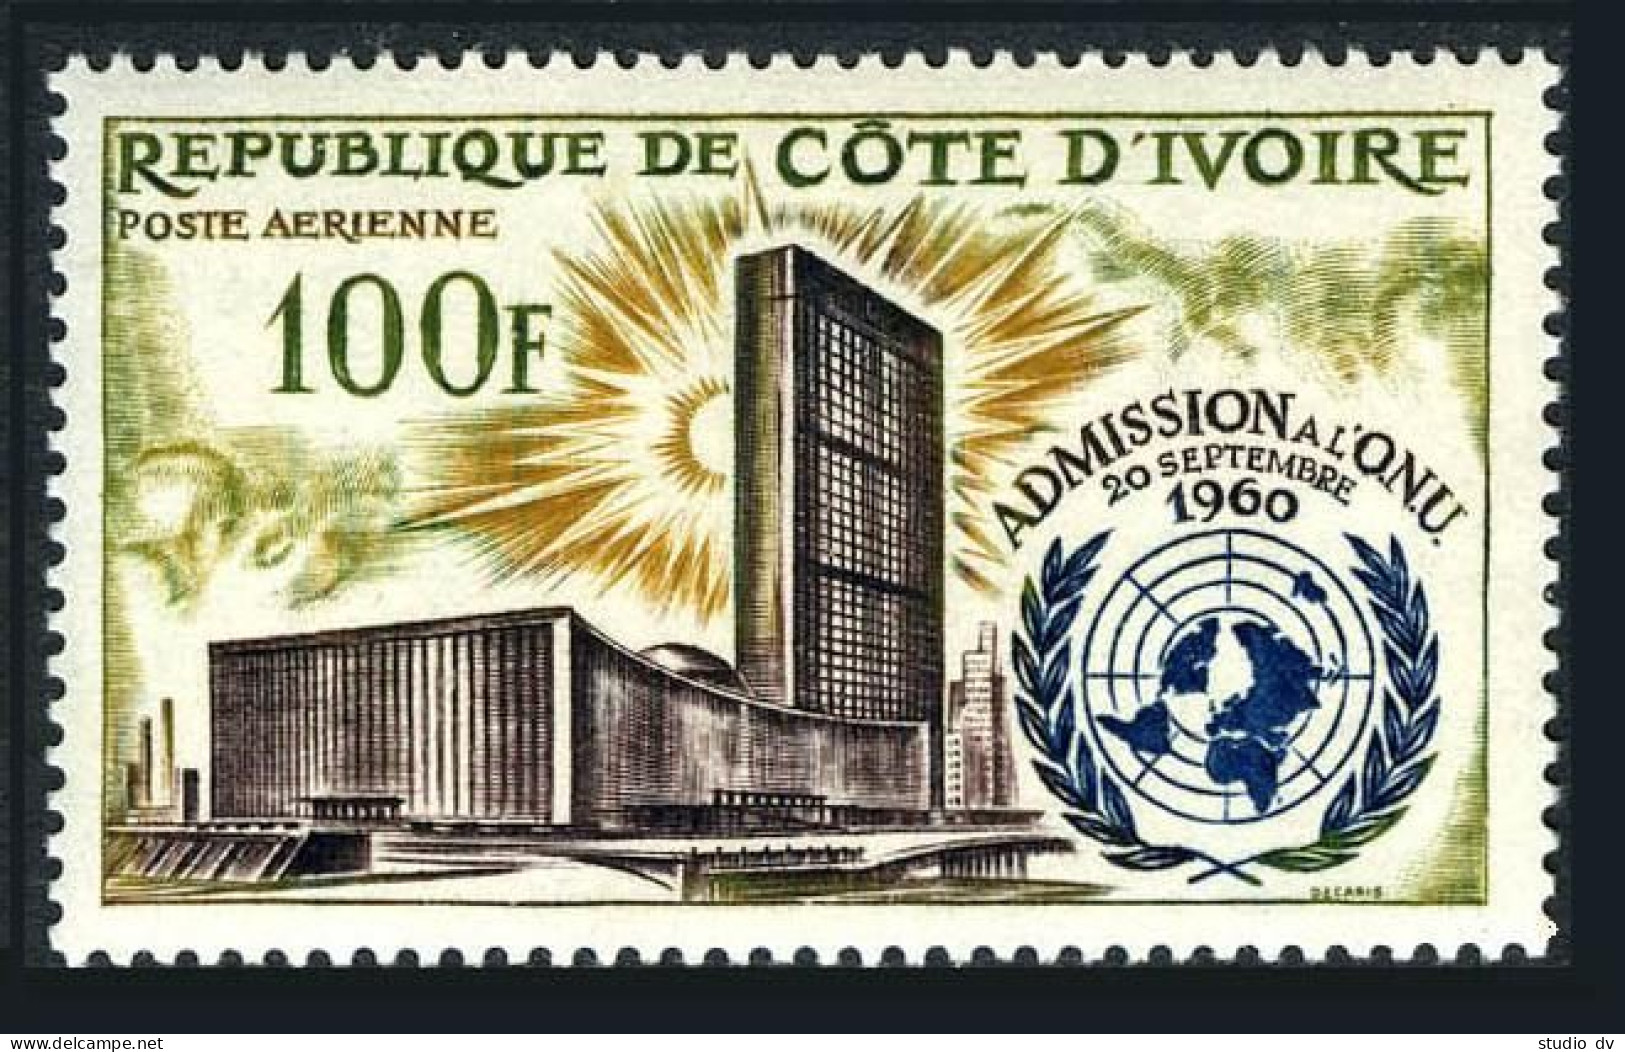 Ivory Coast C21,MNH.Michel 244. Admission To UN,2nd Ann.1962.UN Headquarters. - Côte D'Ivoire (1960-...)